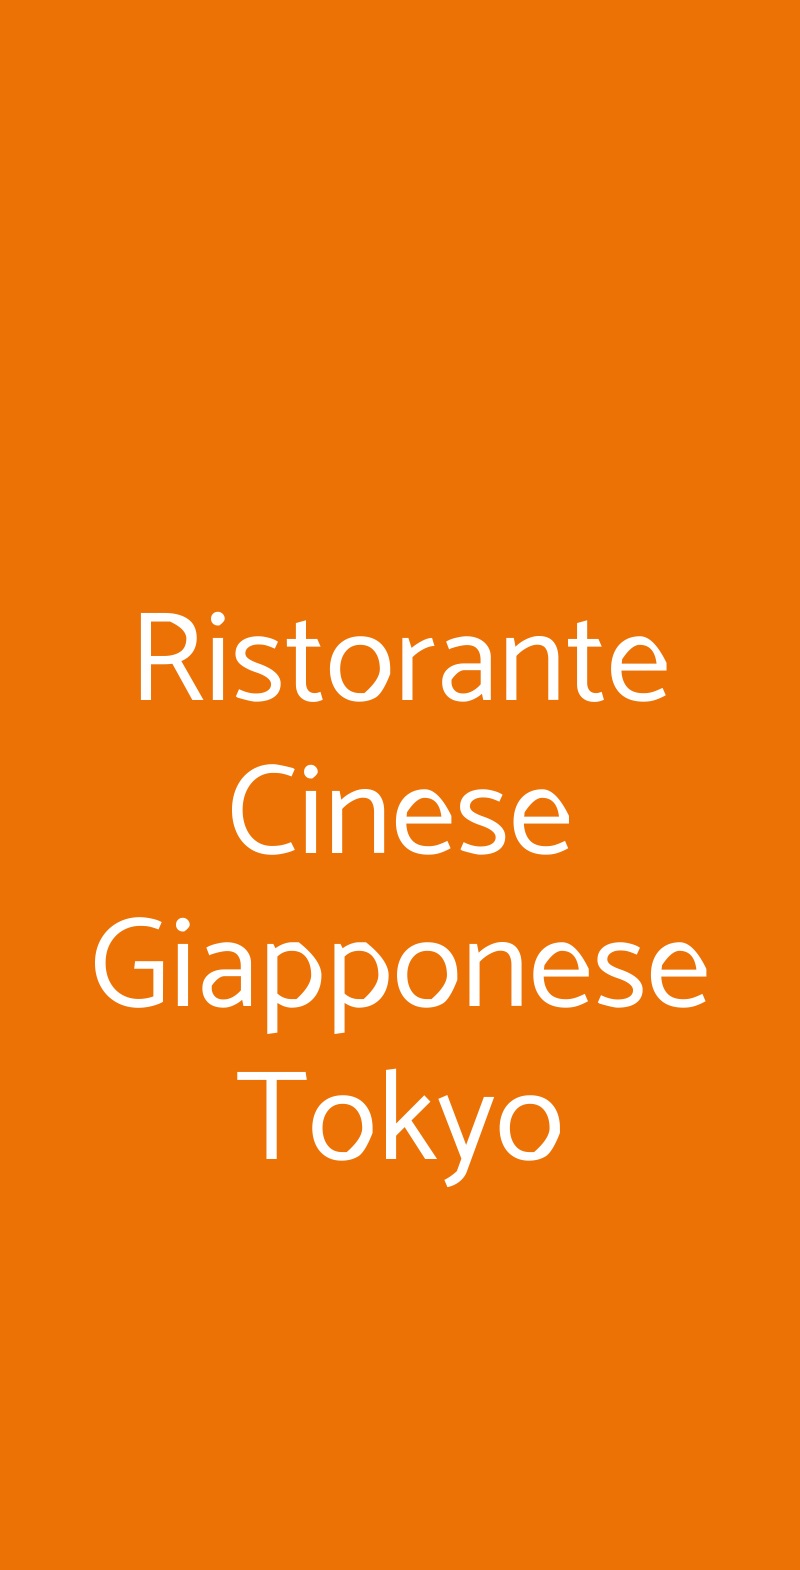 Ristorante Cinese Giapponese Tokyo Fiumicino menù 1 pagina